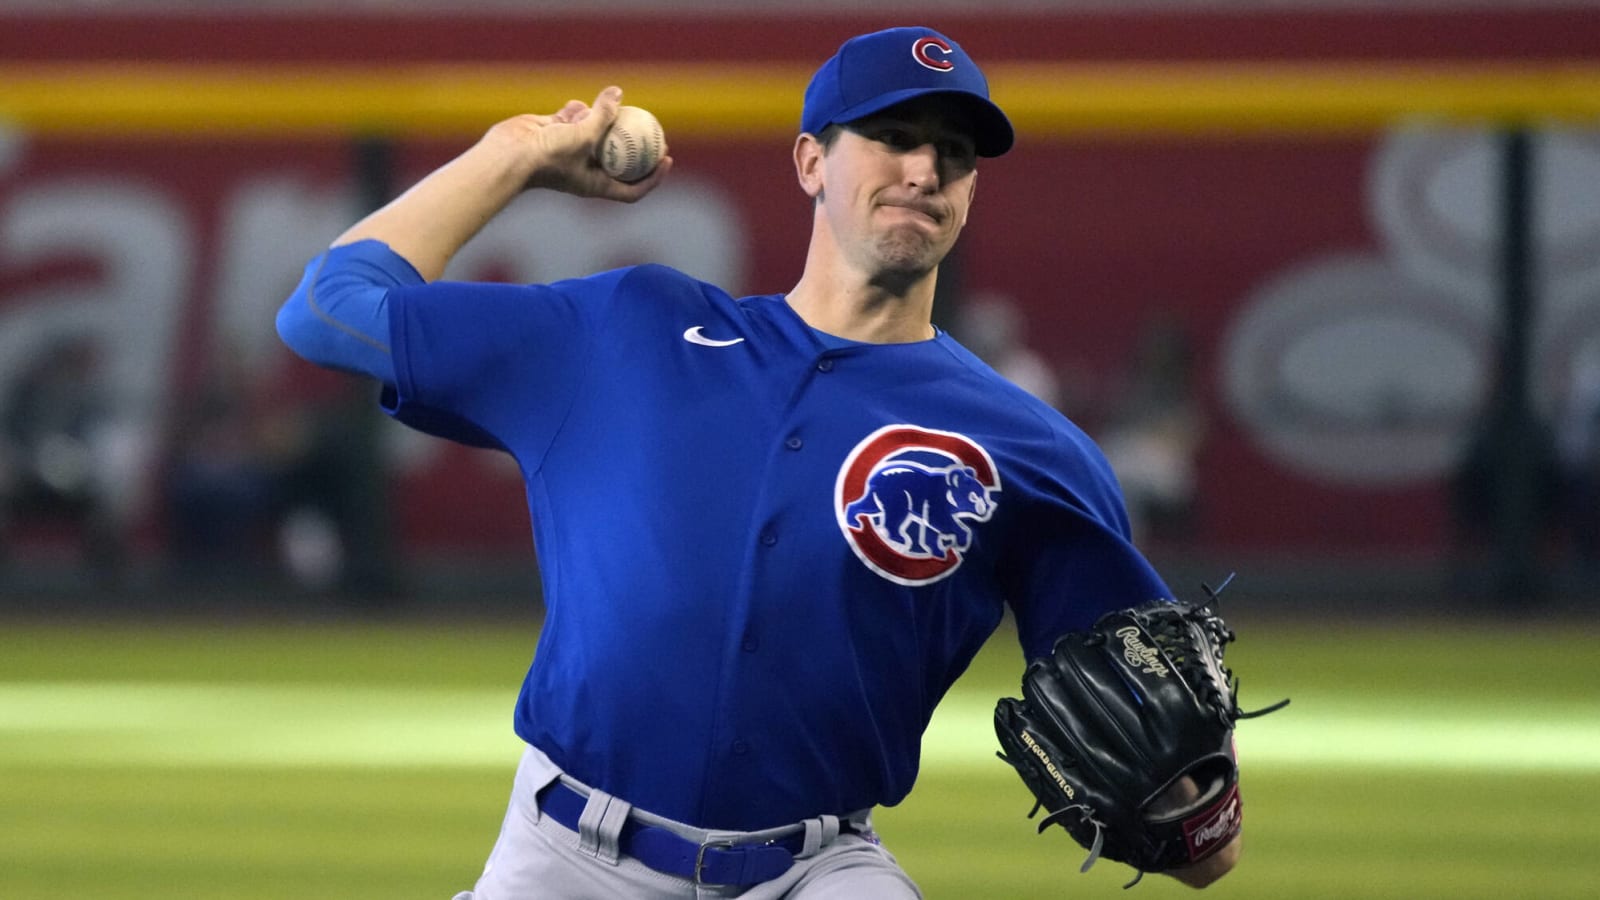 Cubs pitcher Kyle Hendricks underwent an MRI on shoulder strain